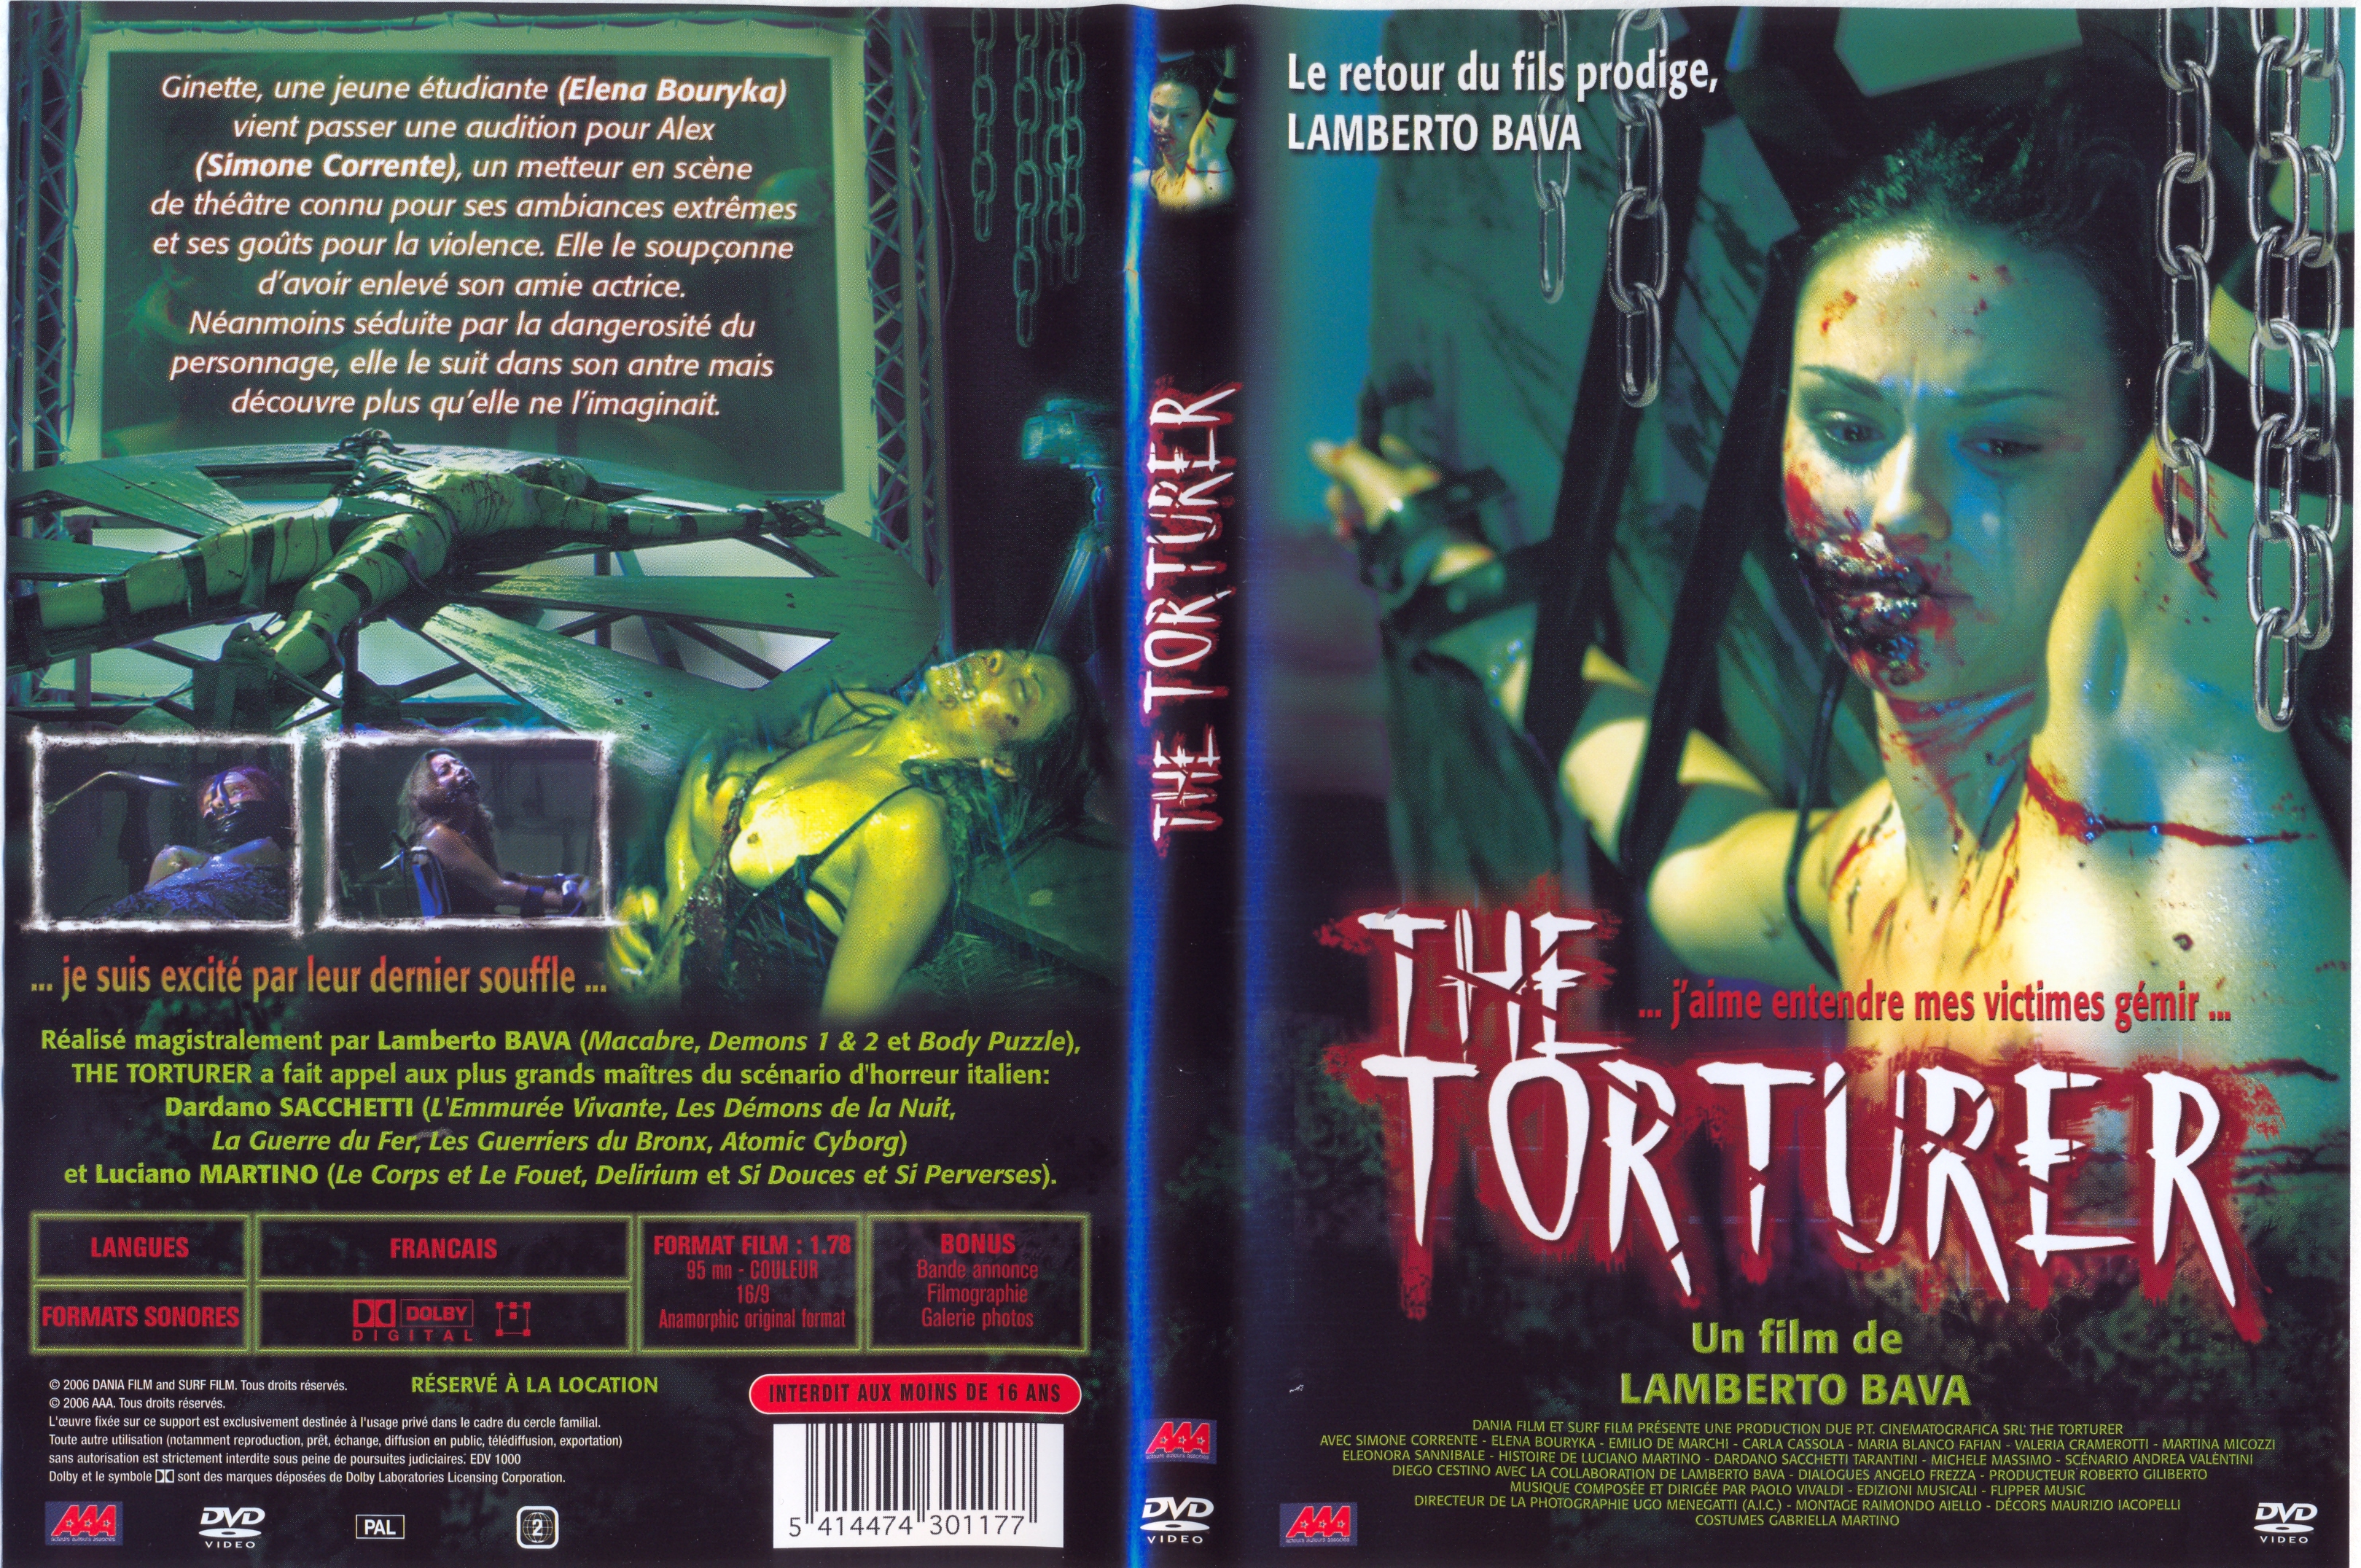 Jaquette DVD The torturer